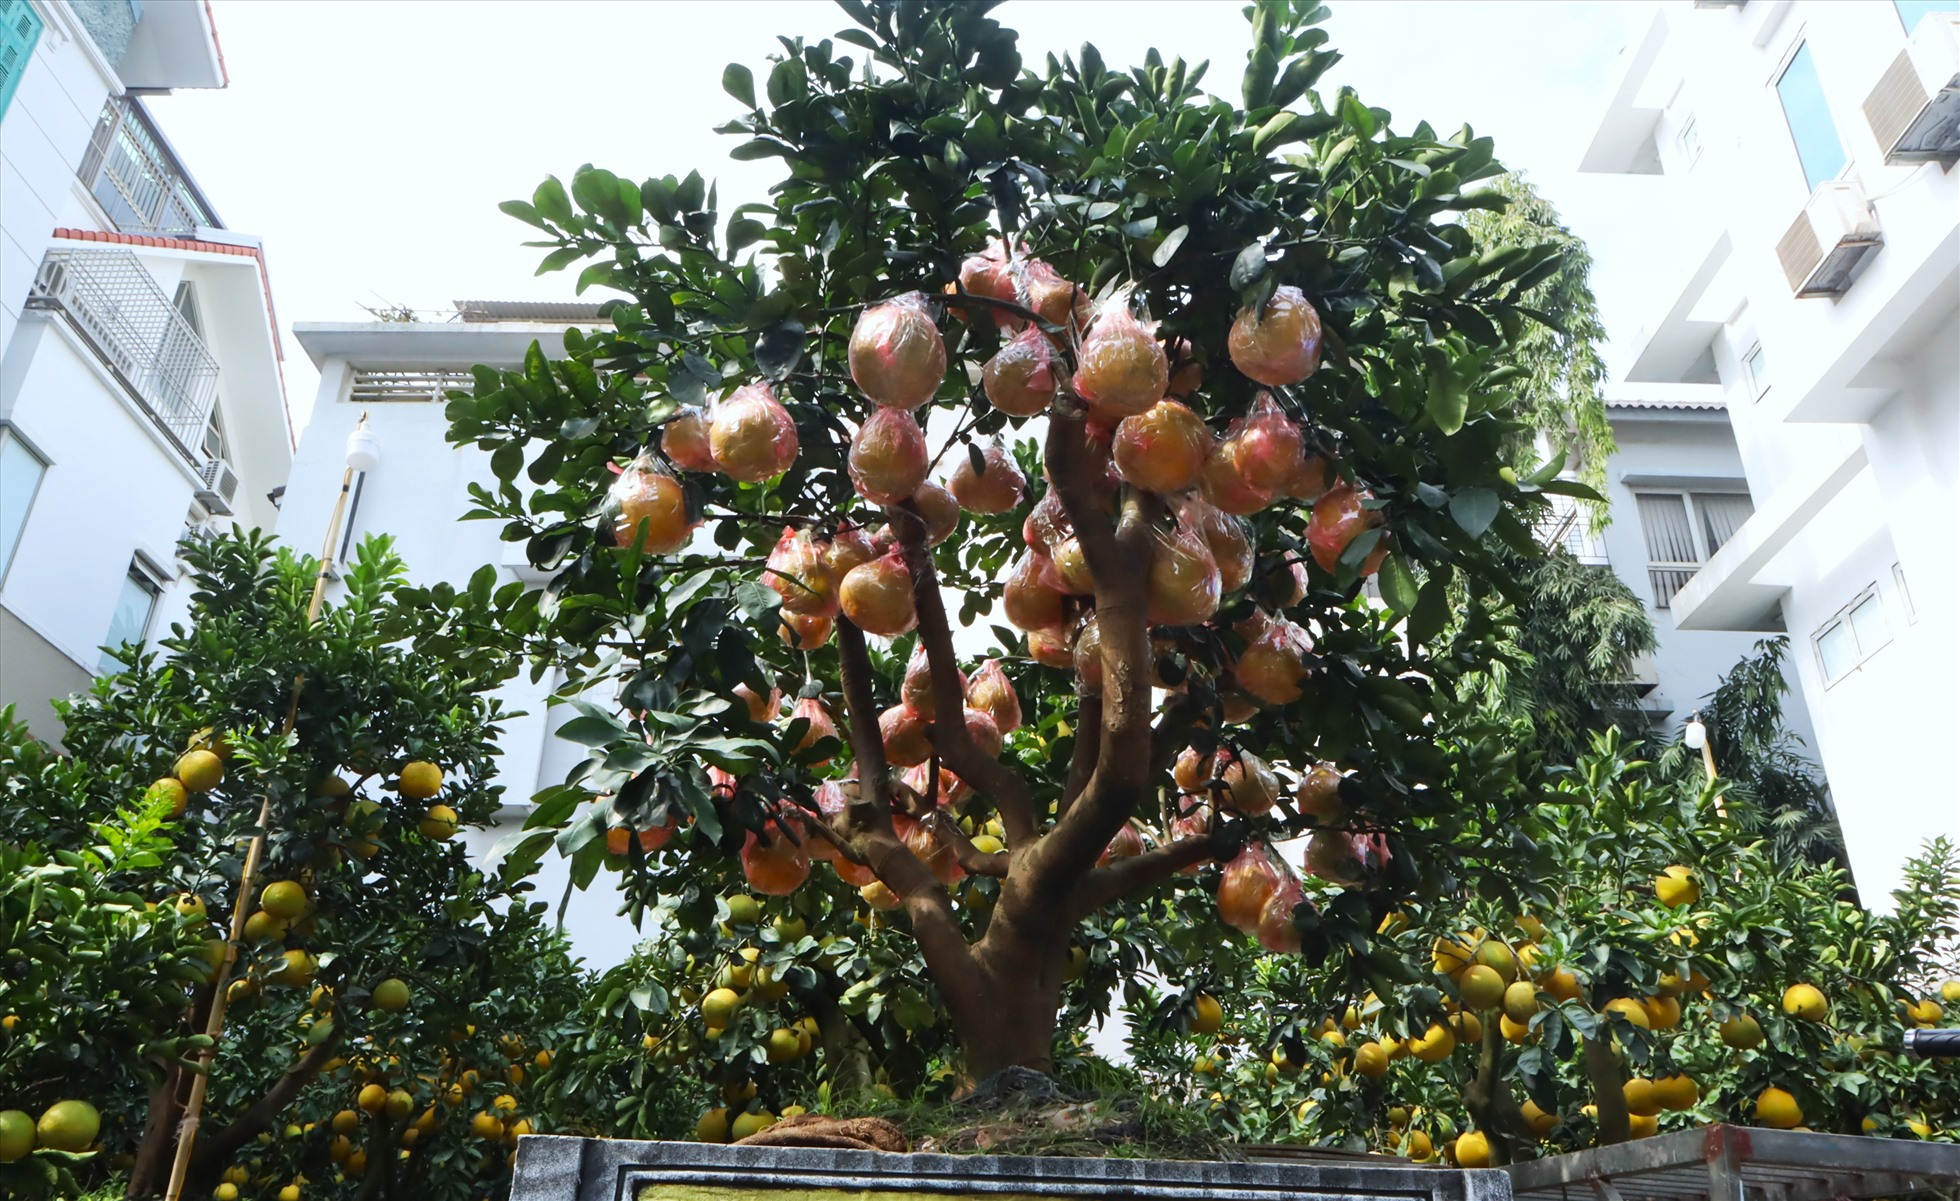 Giá mỗi gốc bưởi bonsai dao động từ 5 - 70 triệu đồng/gốc tùy thuộc vào số lượng quả, độ tuổi, hình dáng của cây.